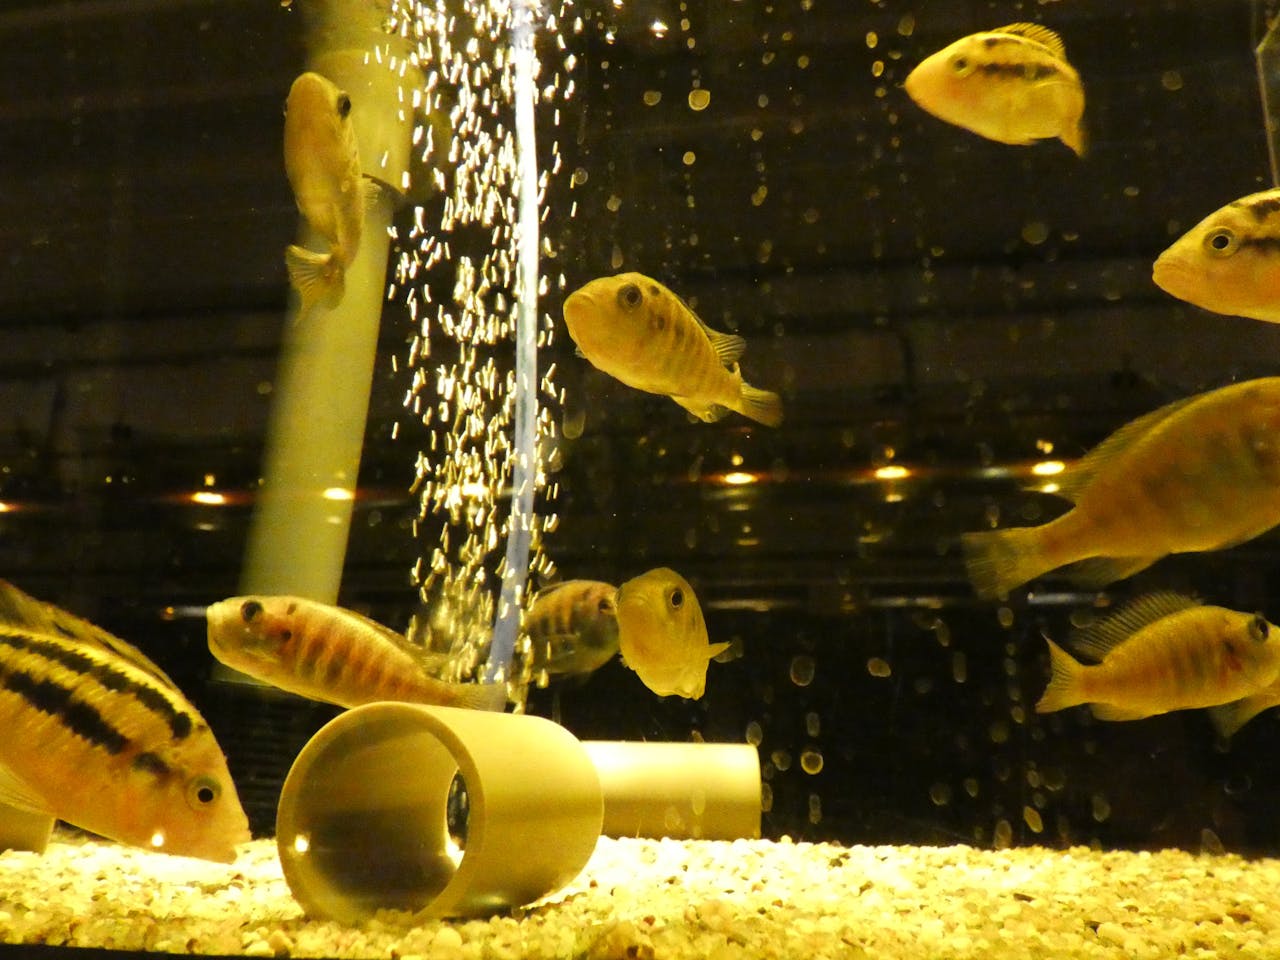 Meerdere gele vissen in een aquarium.